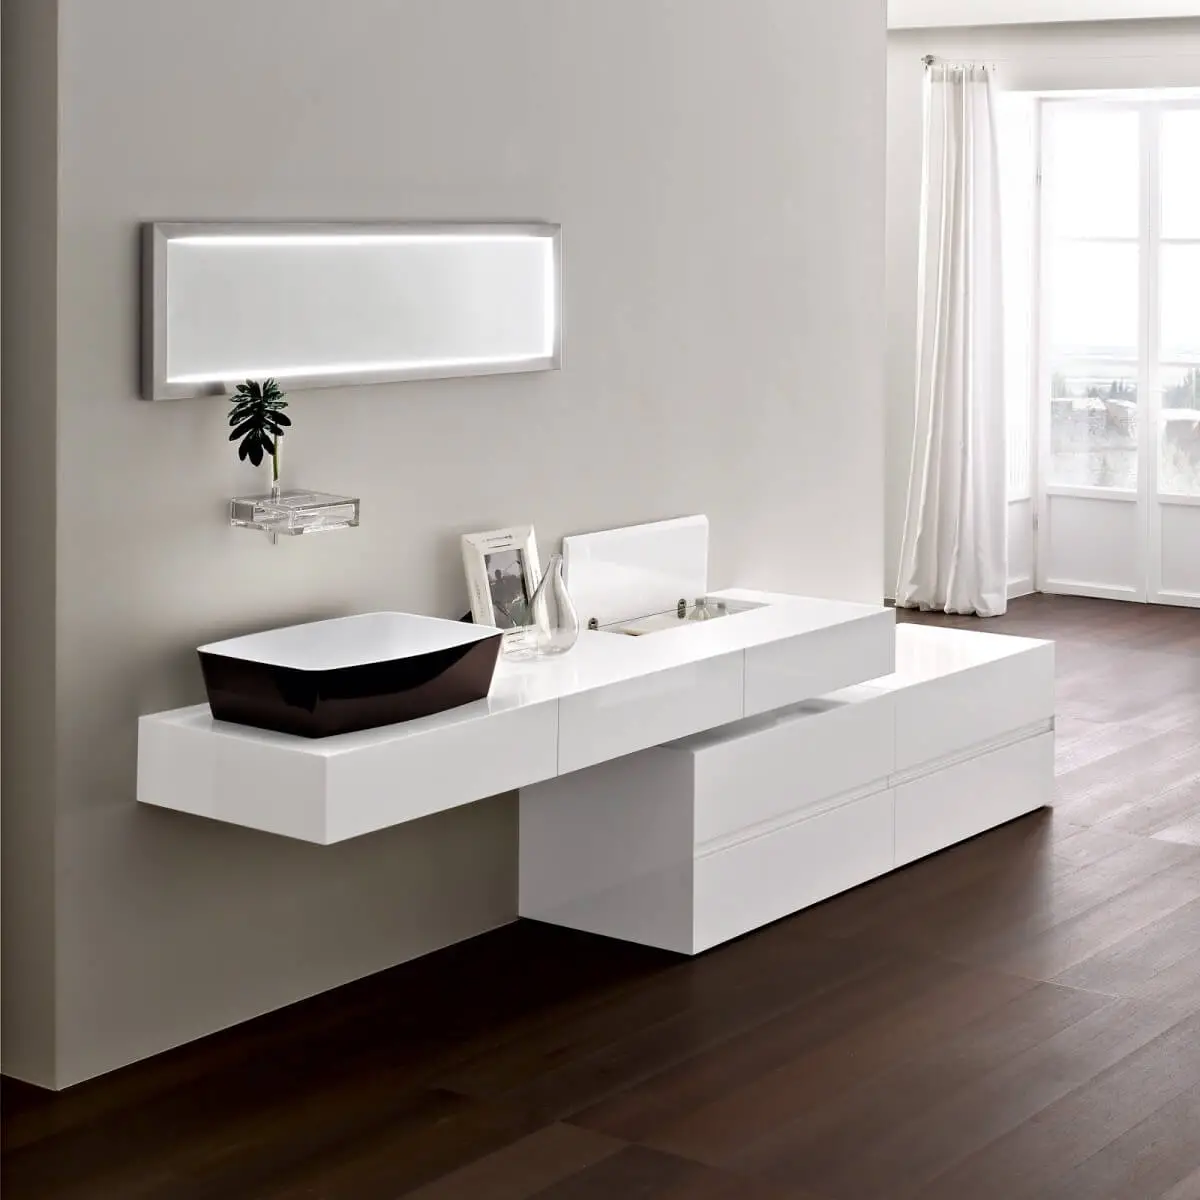 Furniture for bathroom design